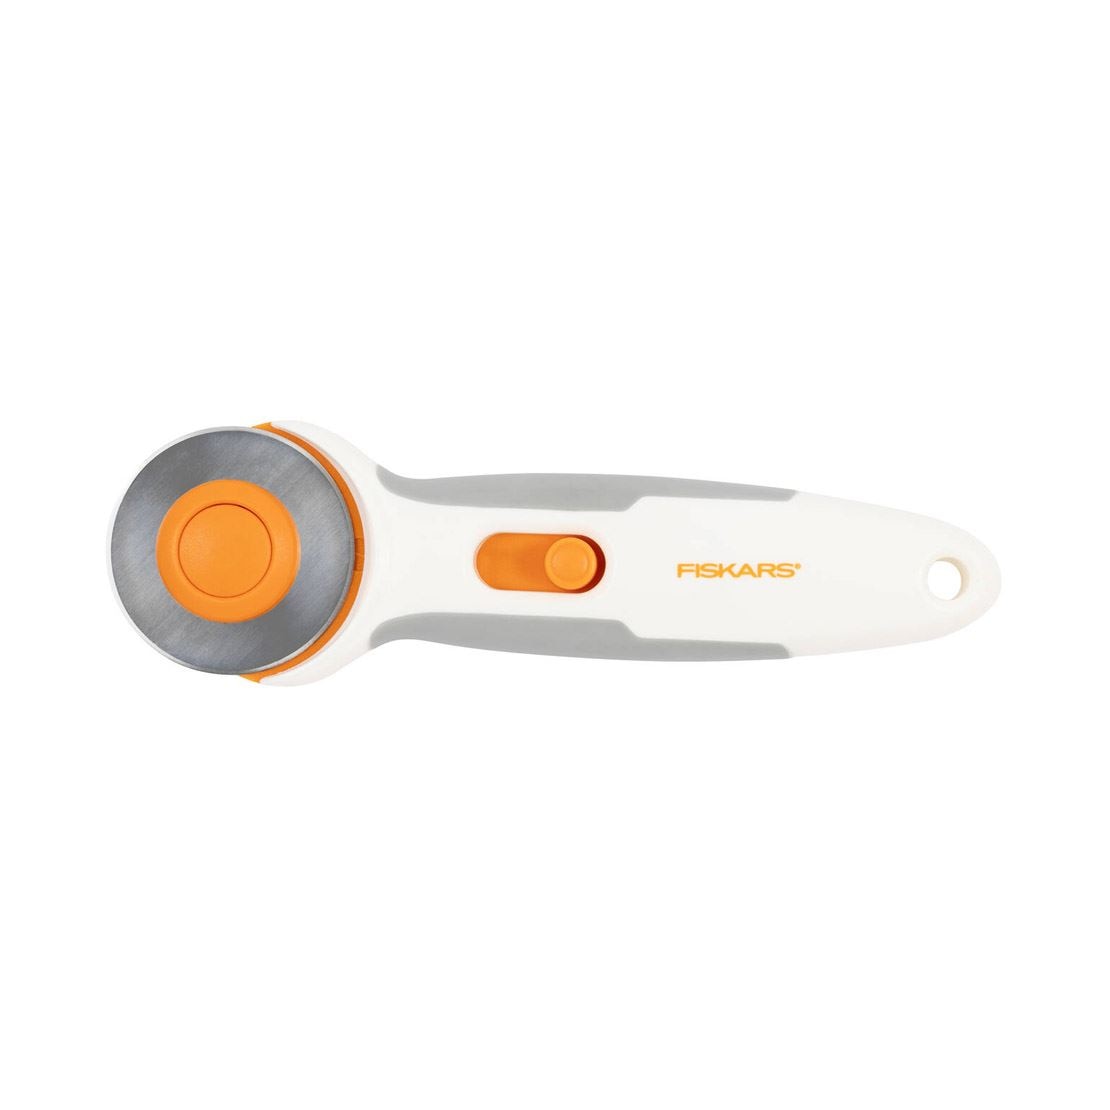 Fiskars® Titanium Stick Rotary Cutter (45 mm)